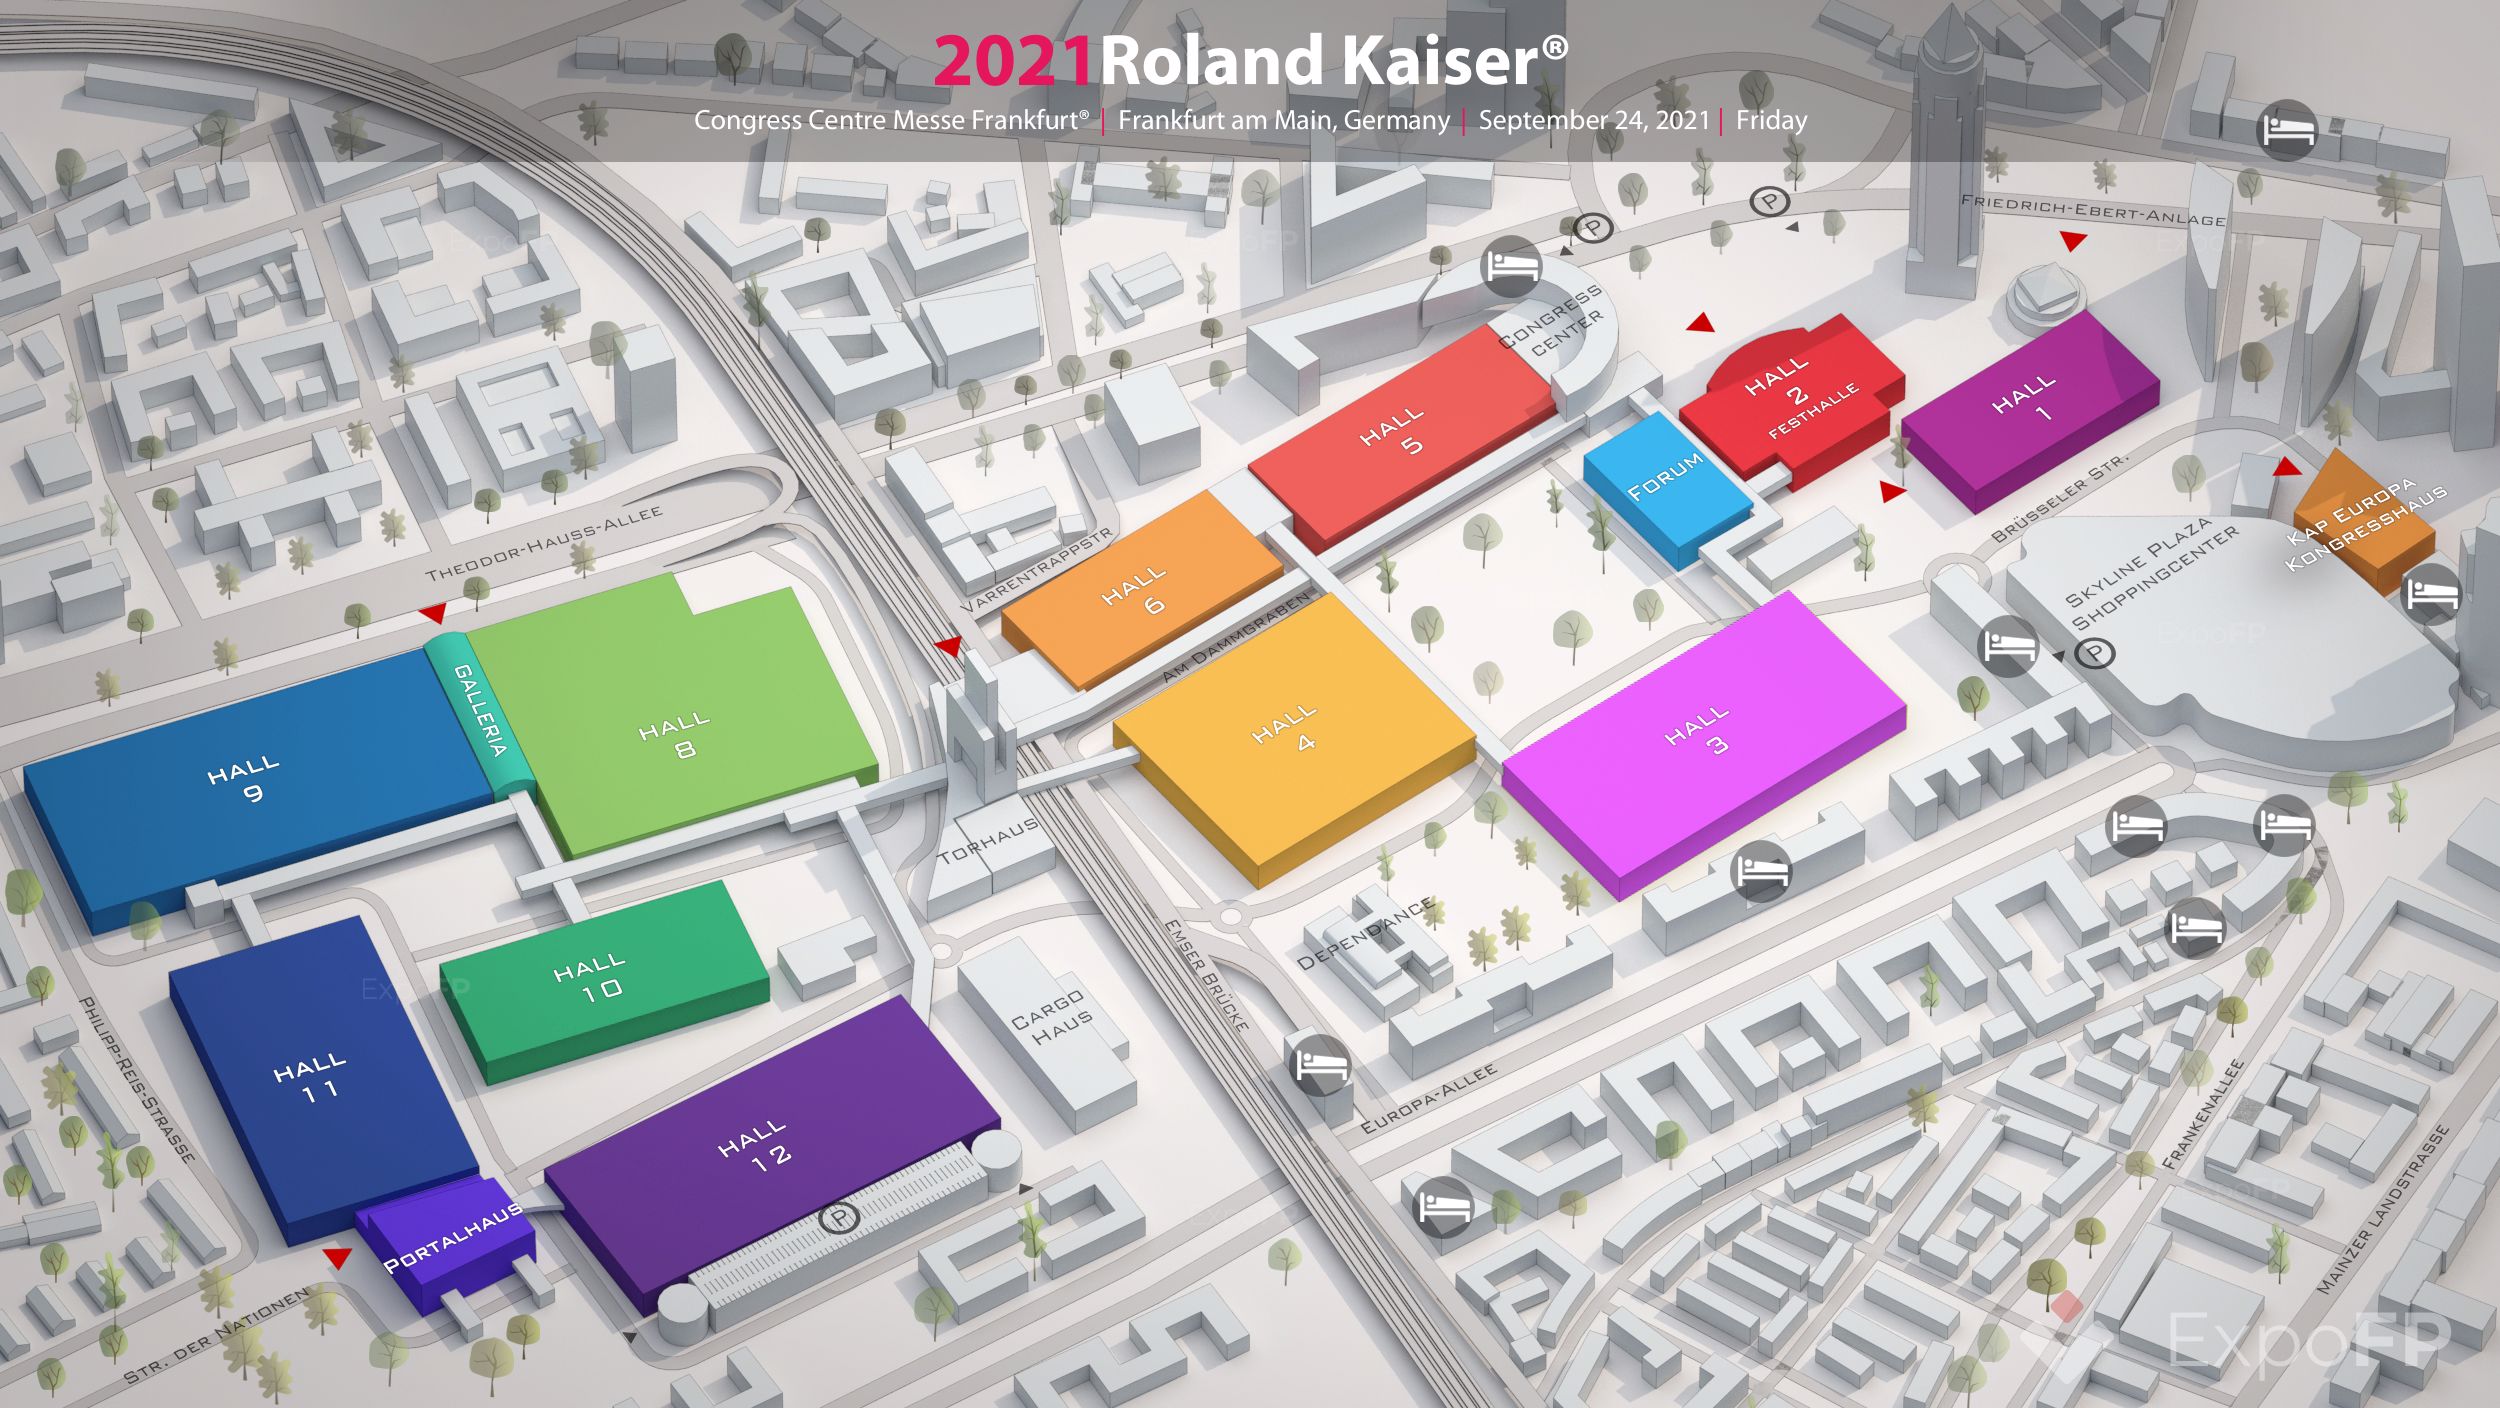 Roland Kaiser 2021 in Congress Centre Messe Frankfurt